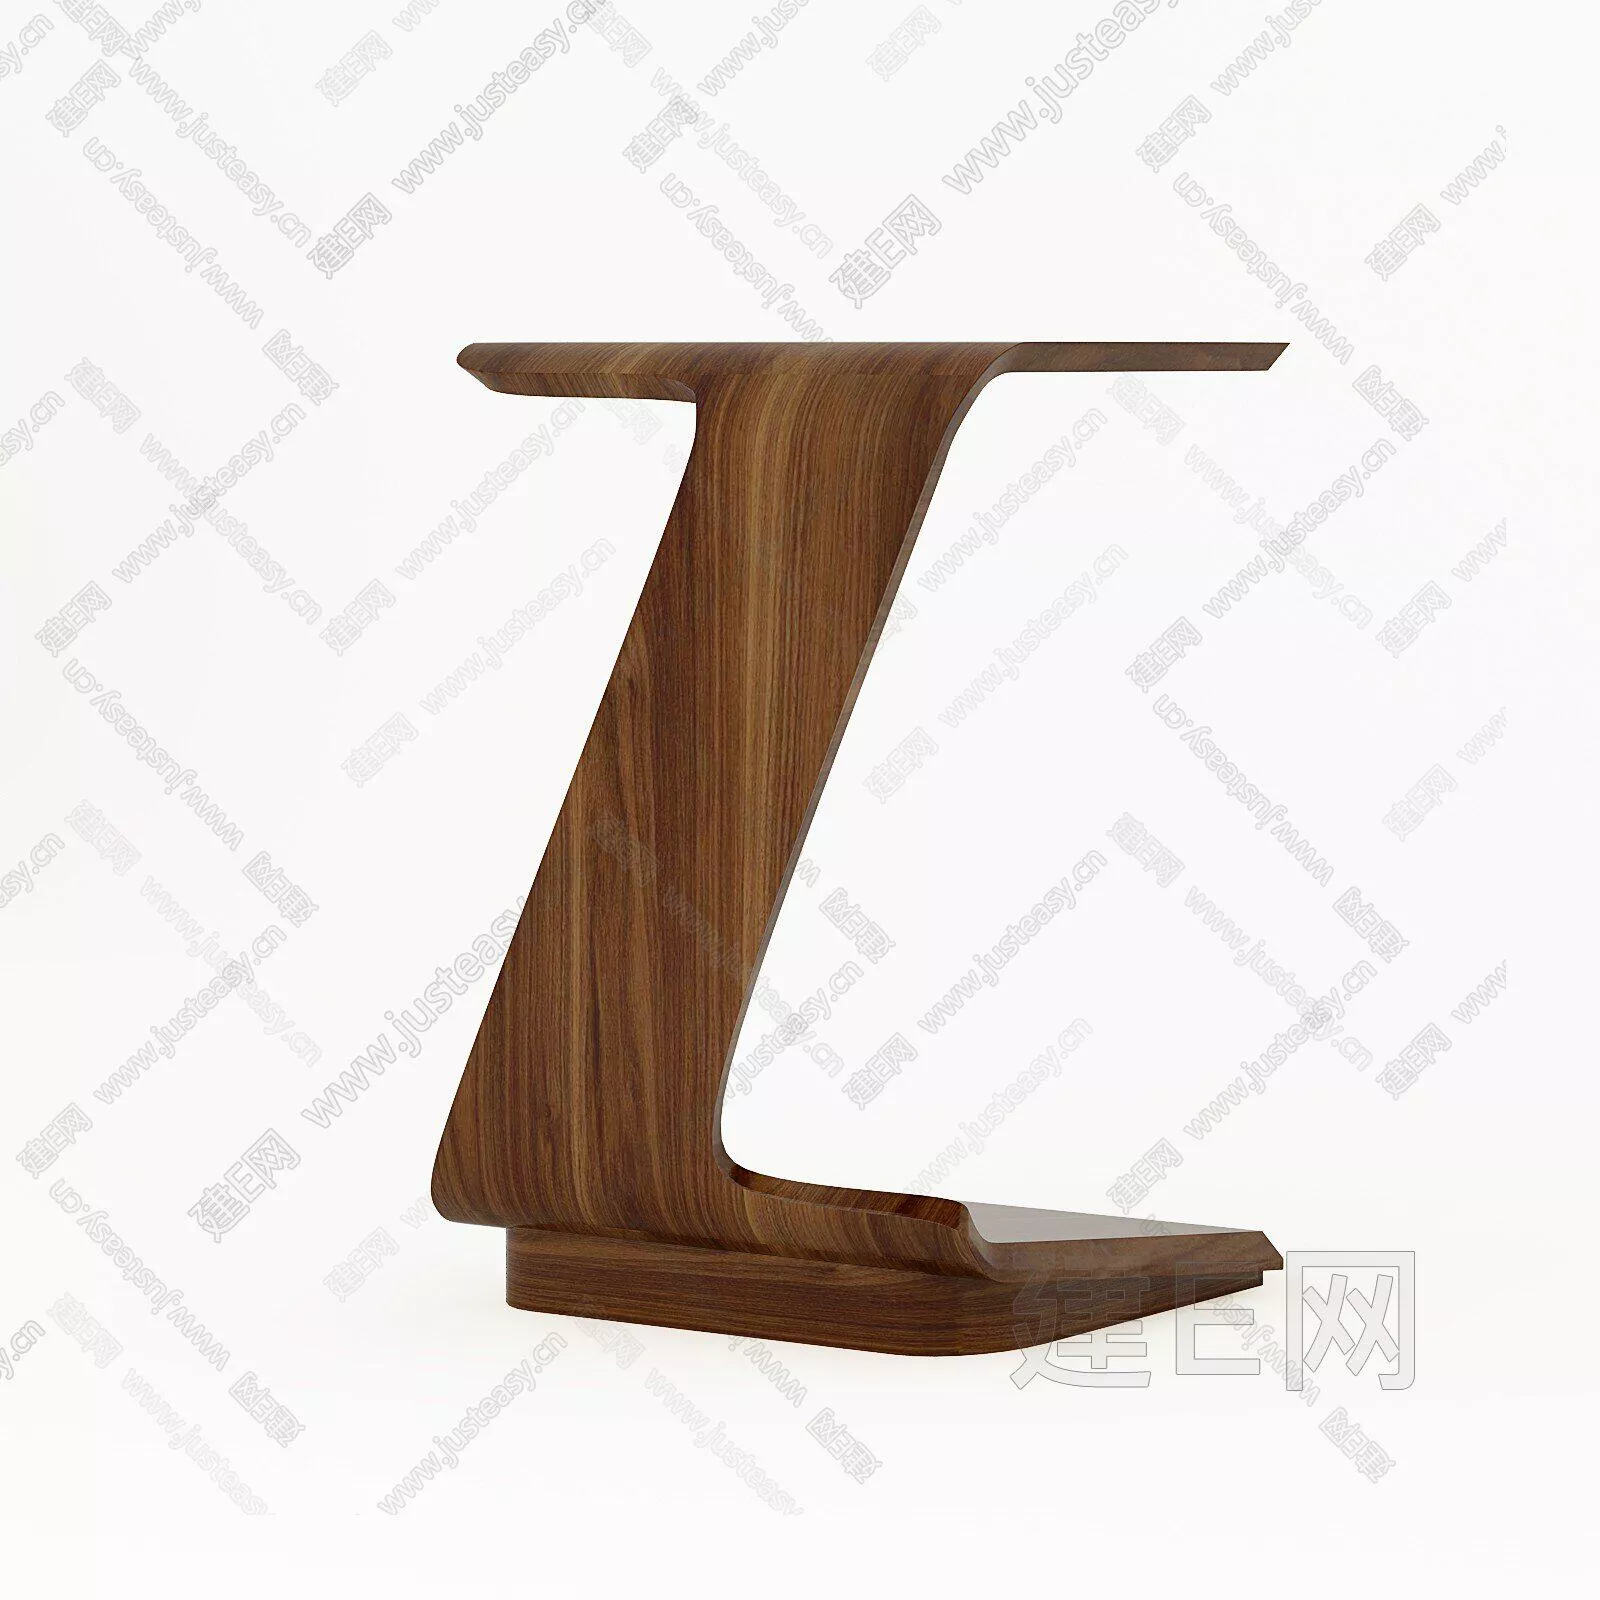 NORDIC SIDE TABLE - SKETCHUP 3D MODEL - ENSCAPE - 111496635